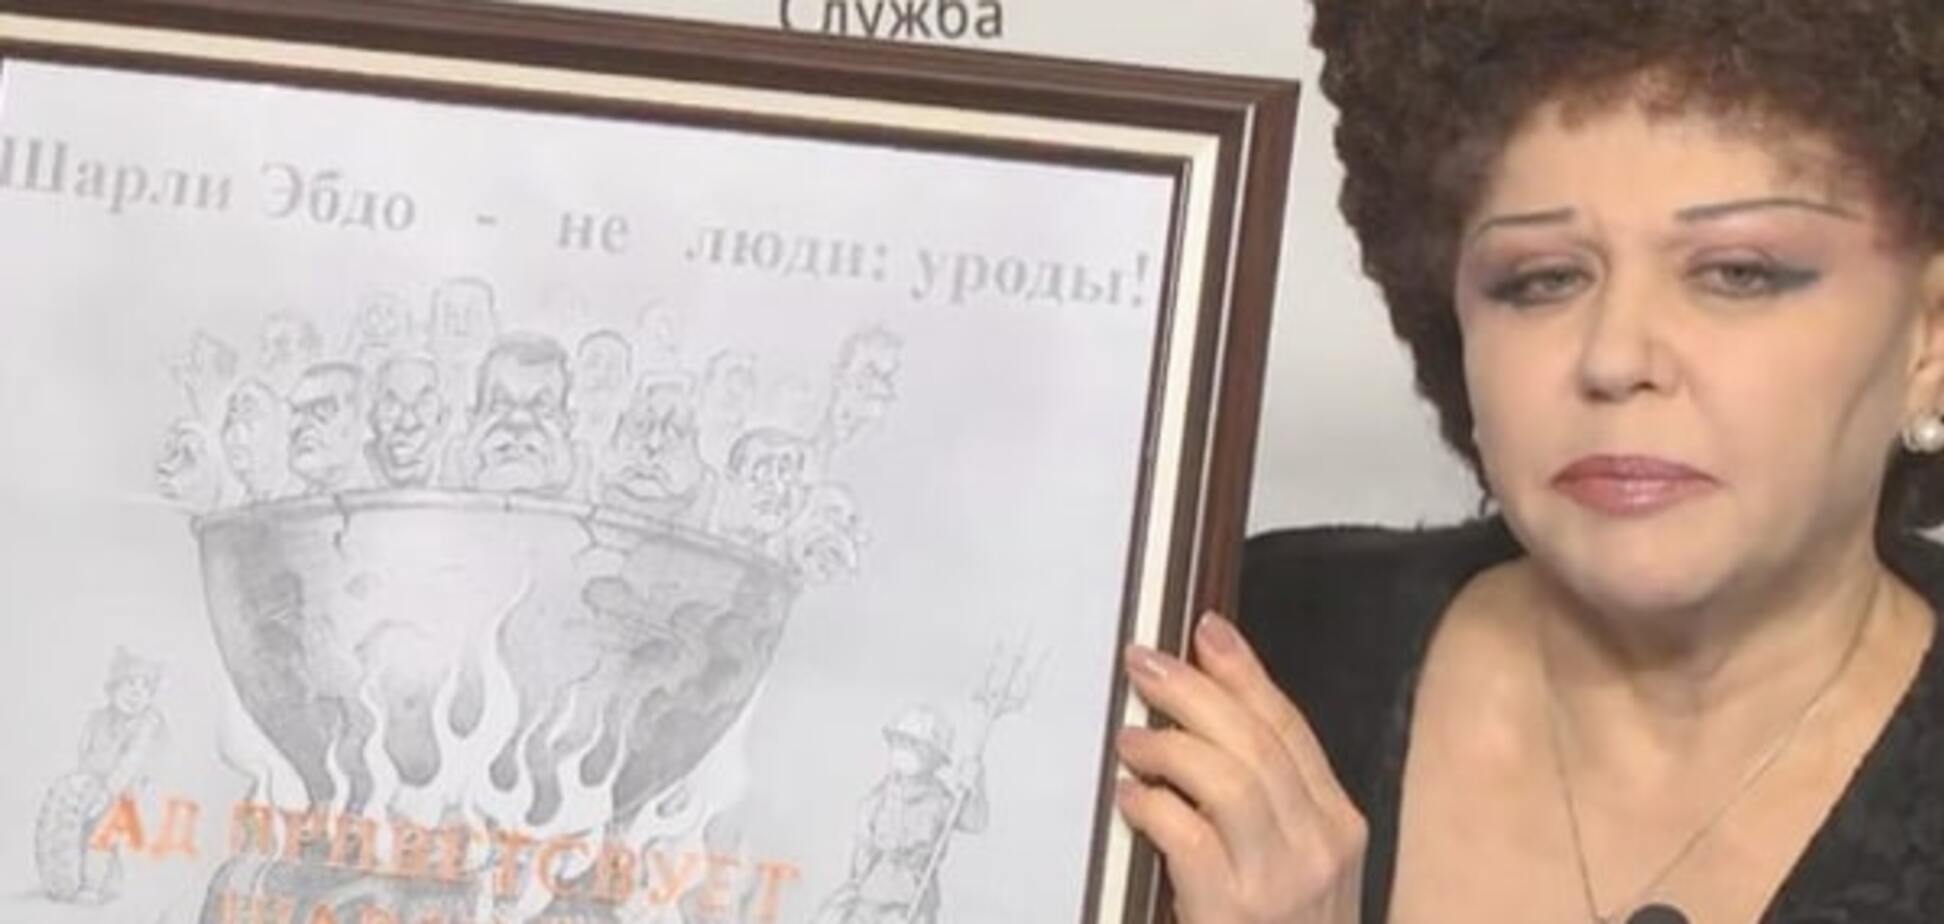 'Помста' Charlie Hebdo: український художник відповів сенаторові РФ на плагіат